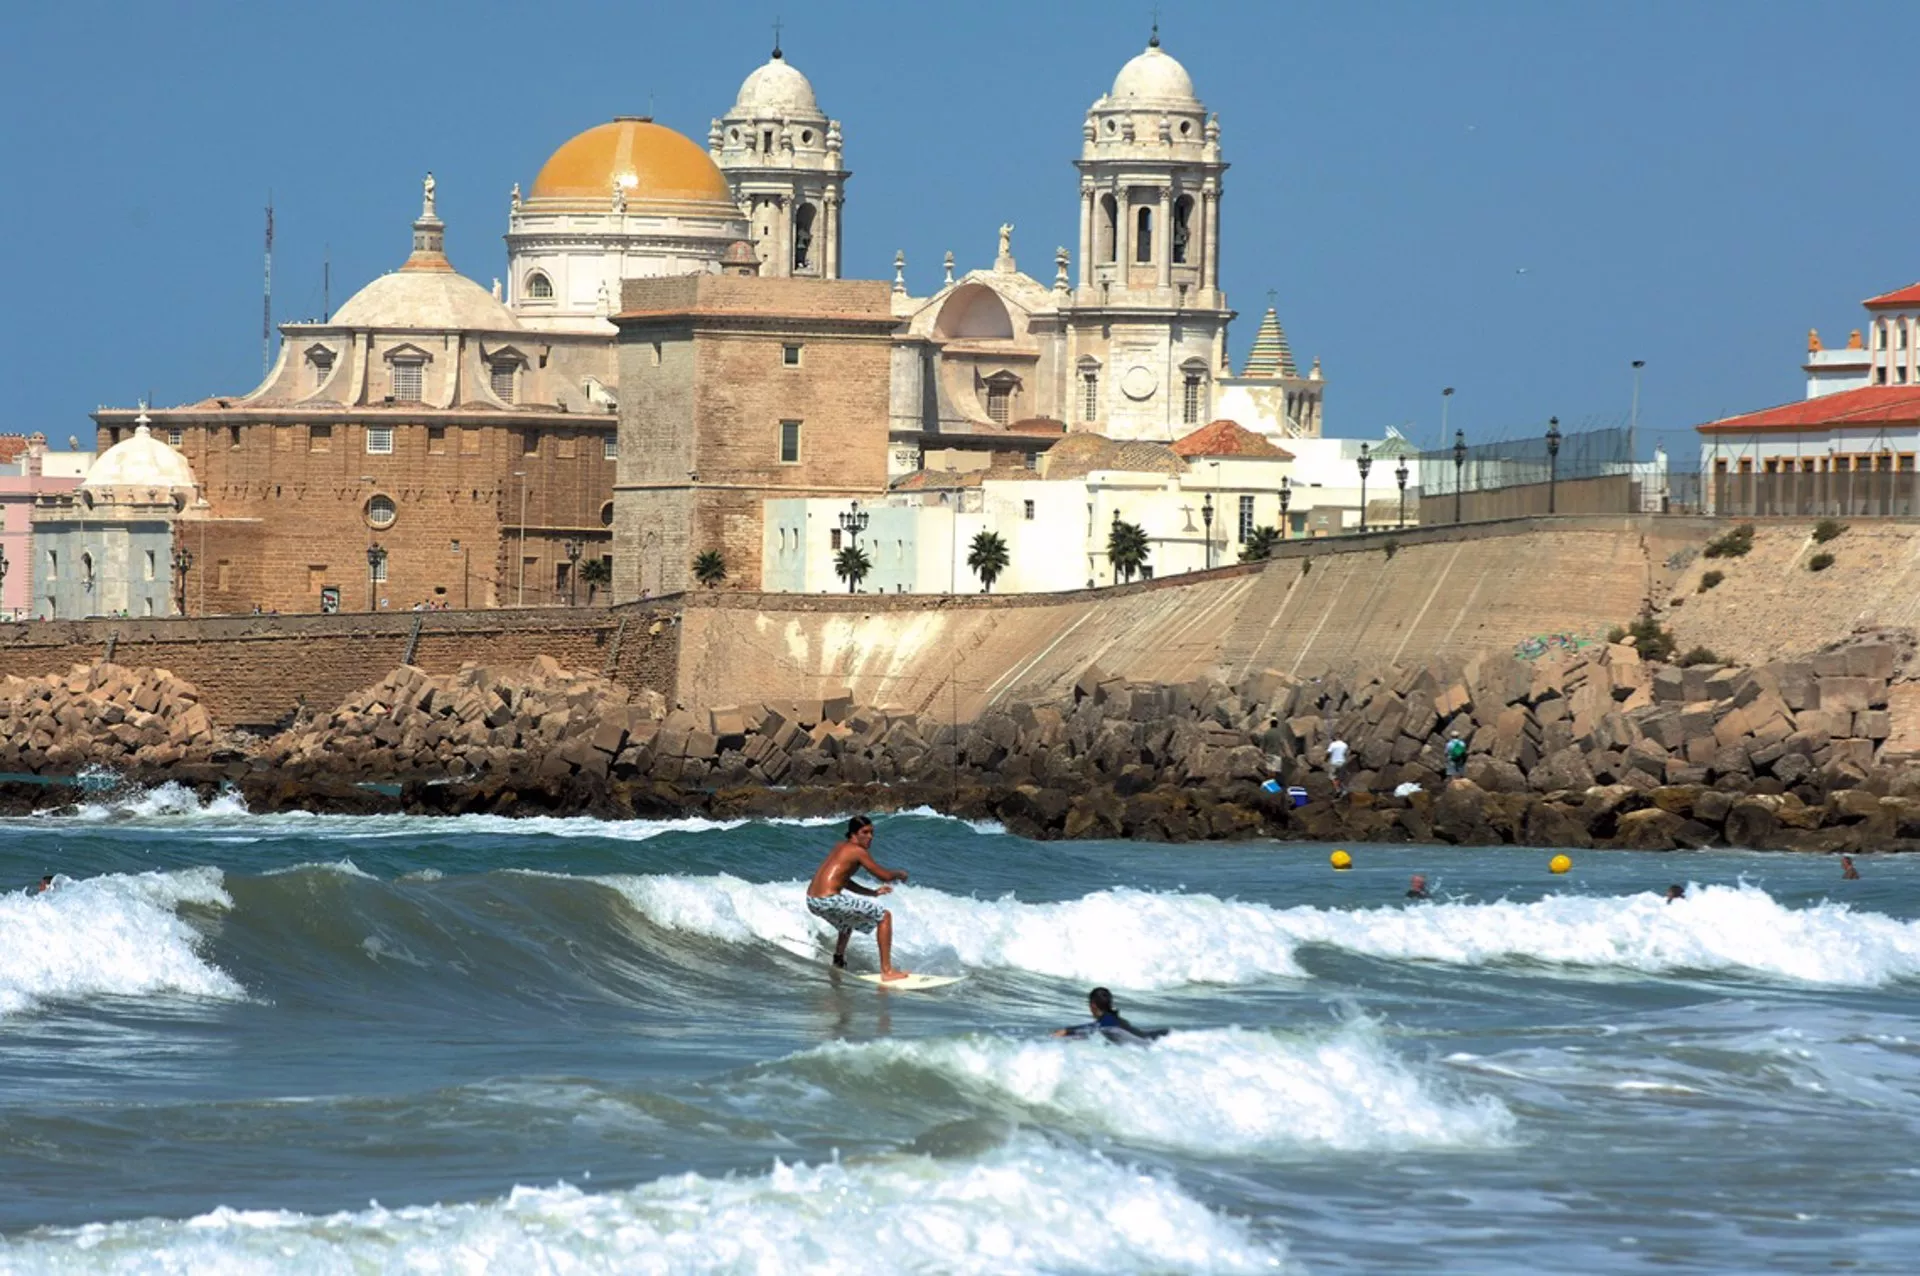 Cádiz capital registra una ocupación hotelera del 86% durante el mes de septiembre.